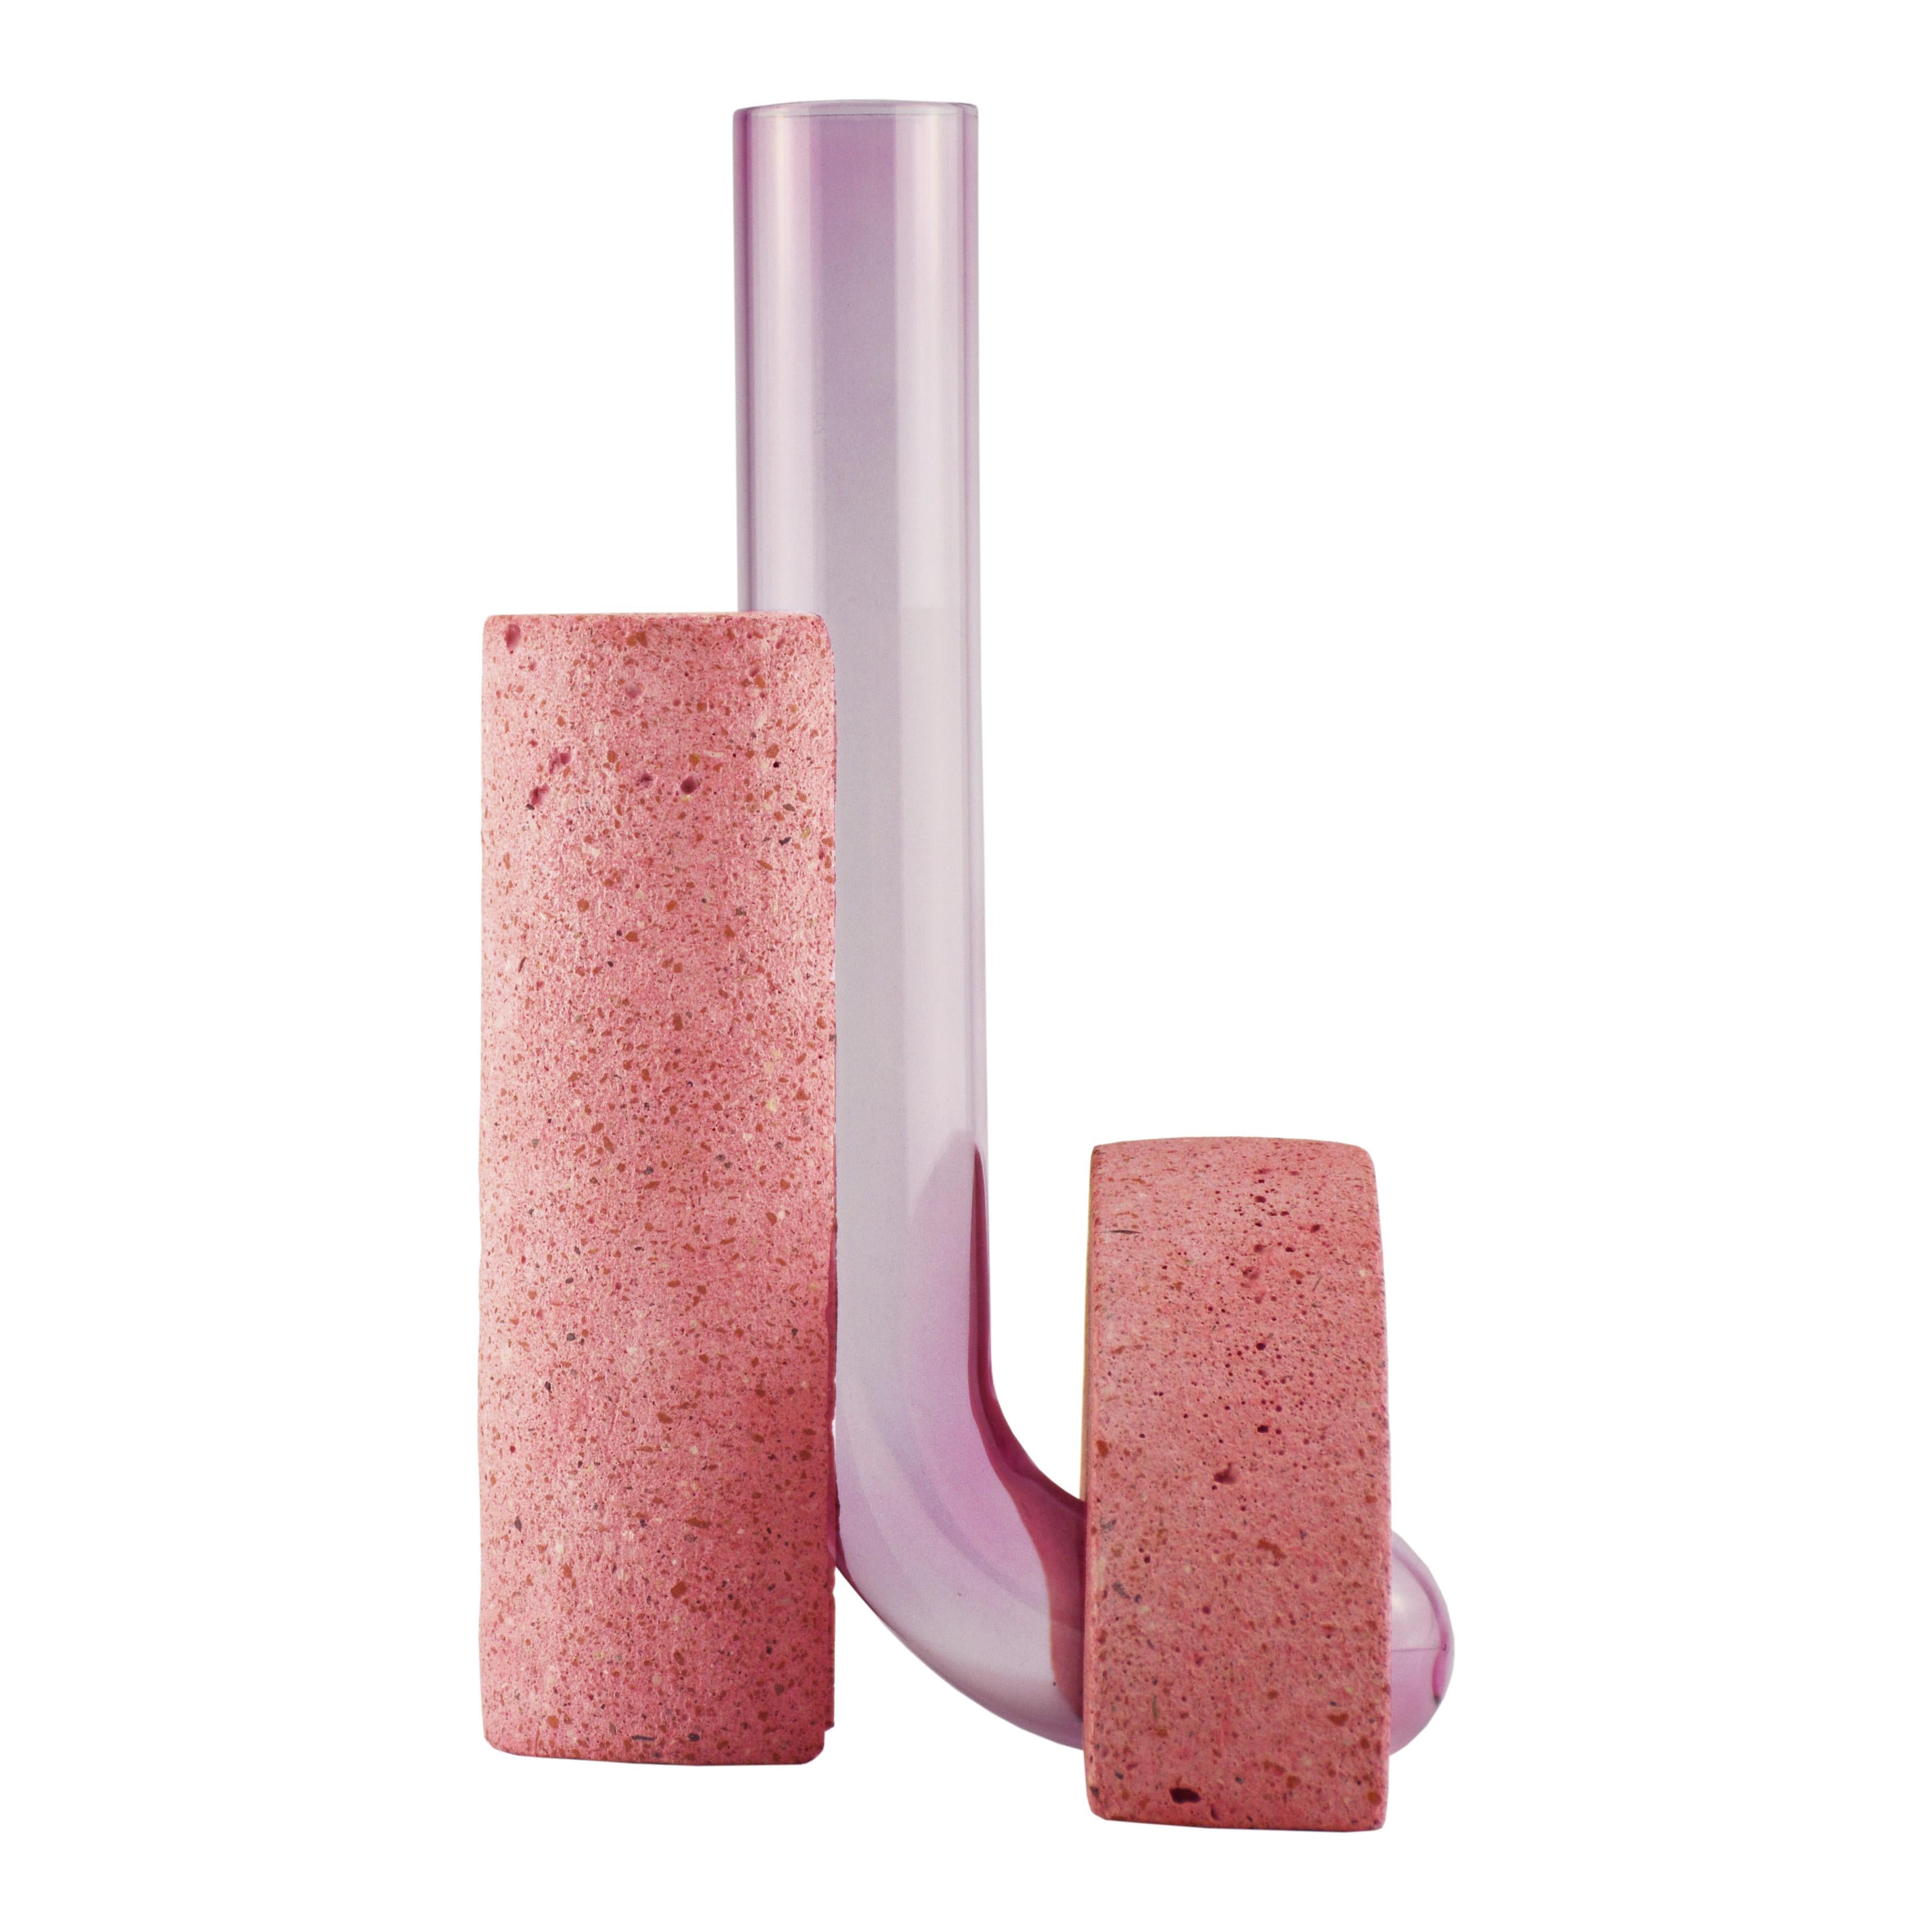 Vase en pierre rose et verre, design contemporain.
La collection de vases Cochleae s'inspire du cycle de vie des escargots et capture leur croissance lorsque le corps de l'invertébré (représenté par le verre incurvé) se développe vers le haut à